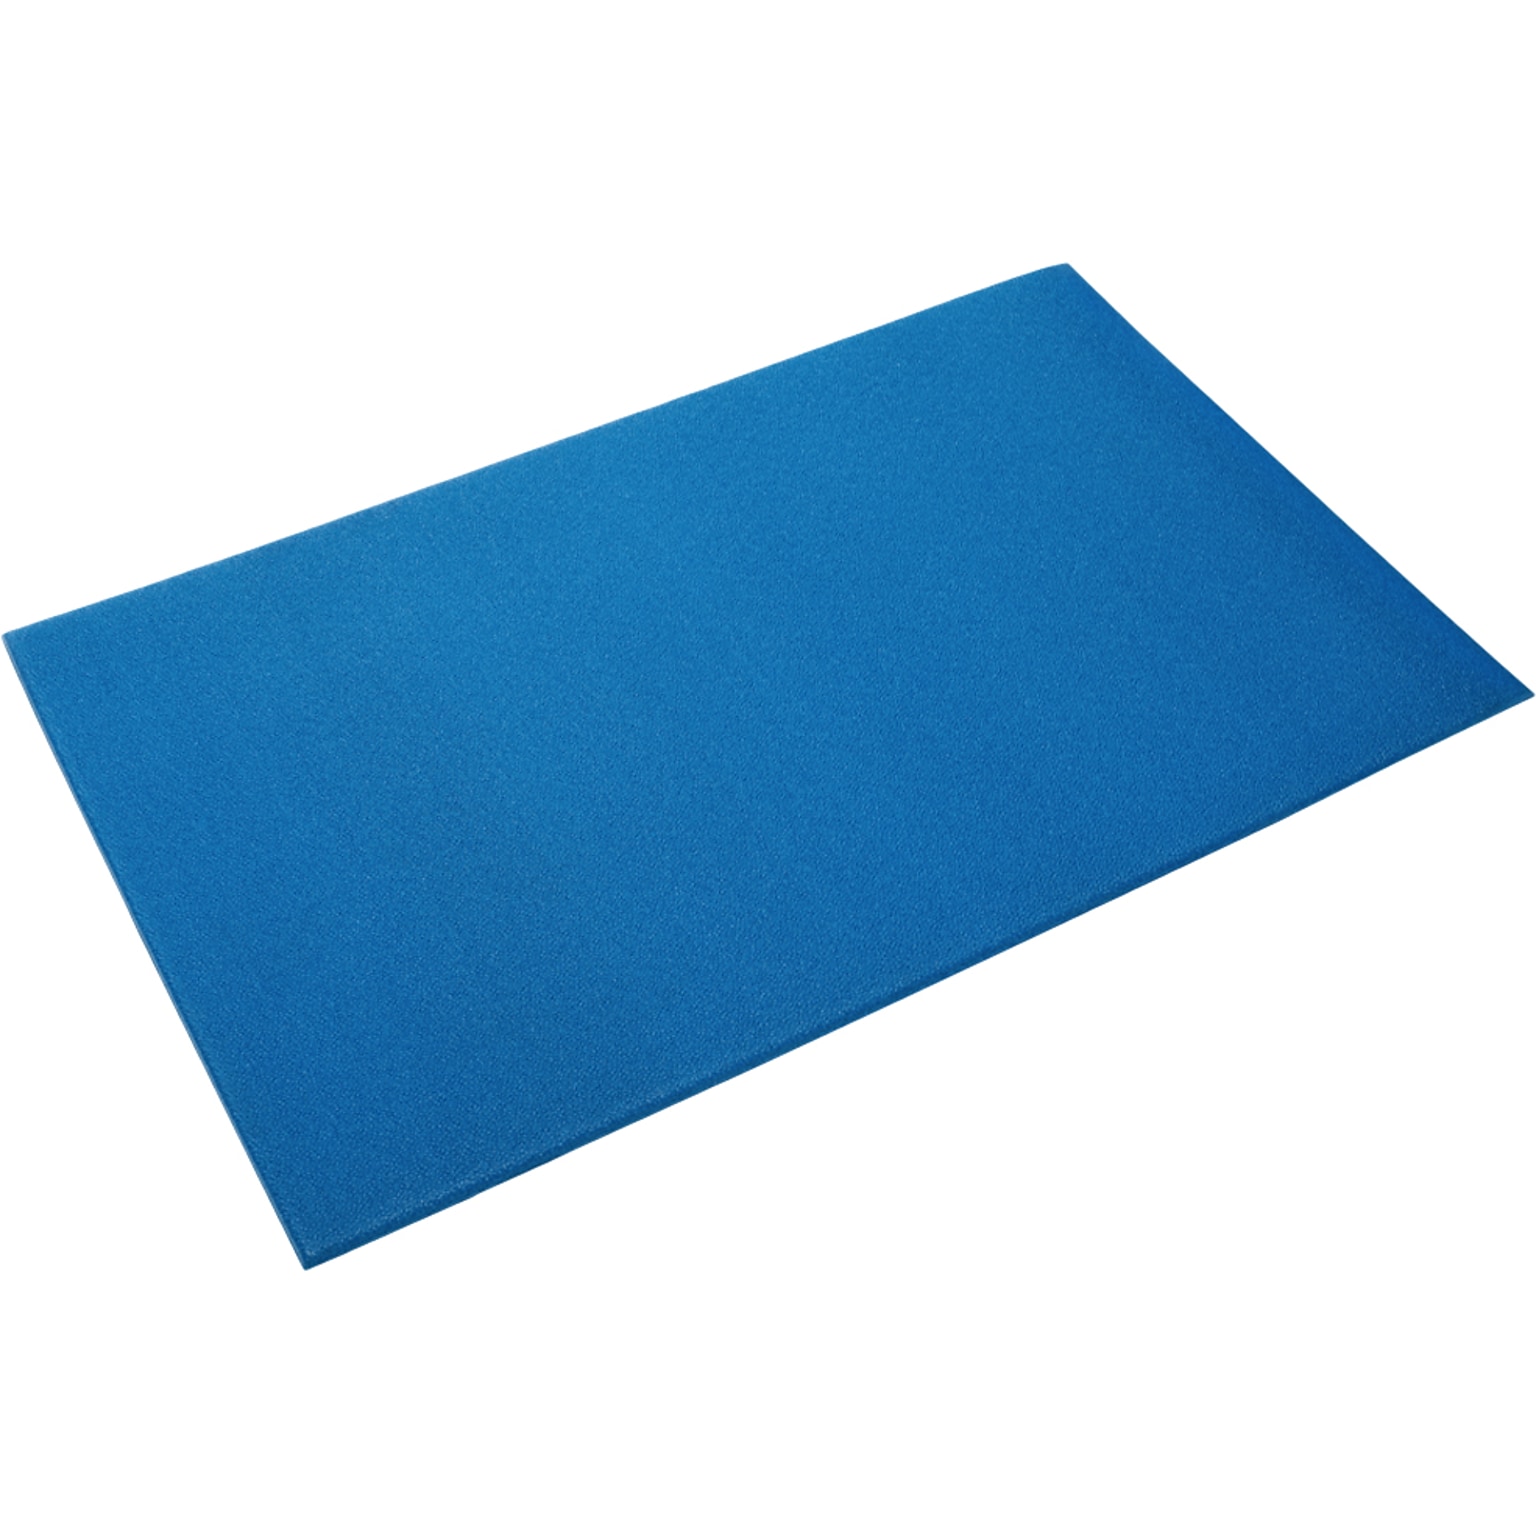 Crown Mats Comfort-King Anti-Fatigue Mat, 36 x 144, Blue (CK 0312BL)